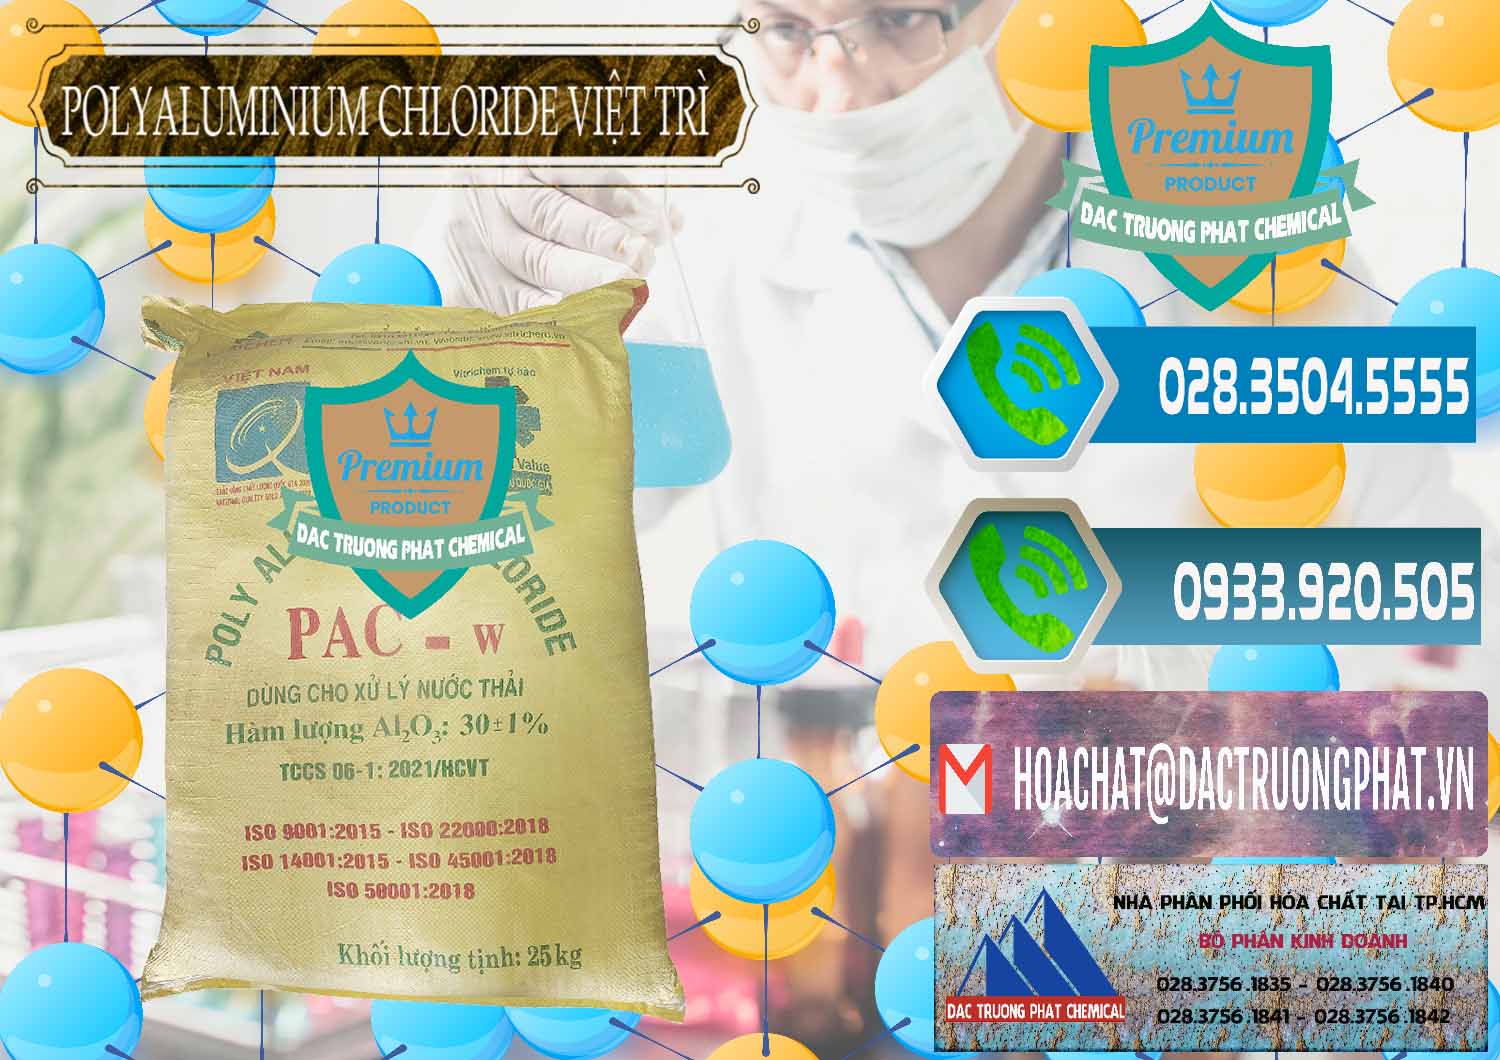 Cty chuyên bán _ cung ứng PAC - Polyaluminium Chloride Việt Trì Việt Nam - 0487 - Cty chuyên phân phối _ cung ứng hóa chất tại TP.HCM - congtyhoachat.net